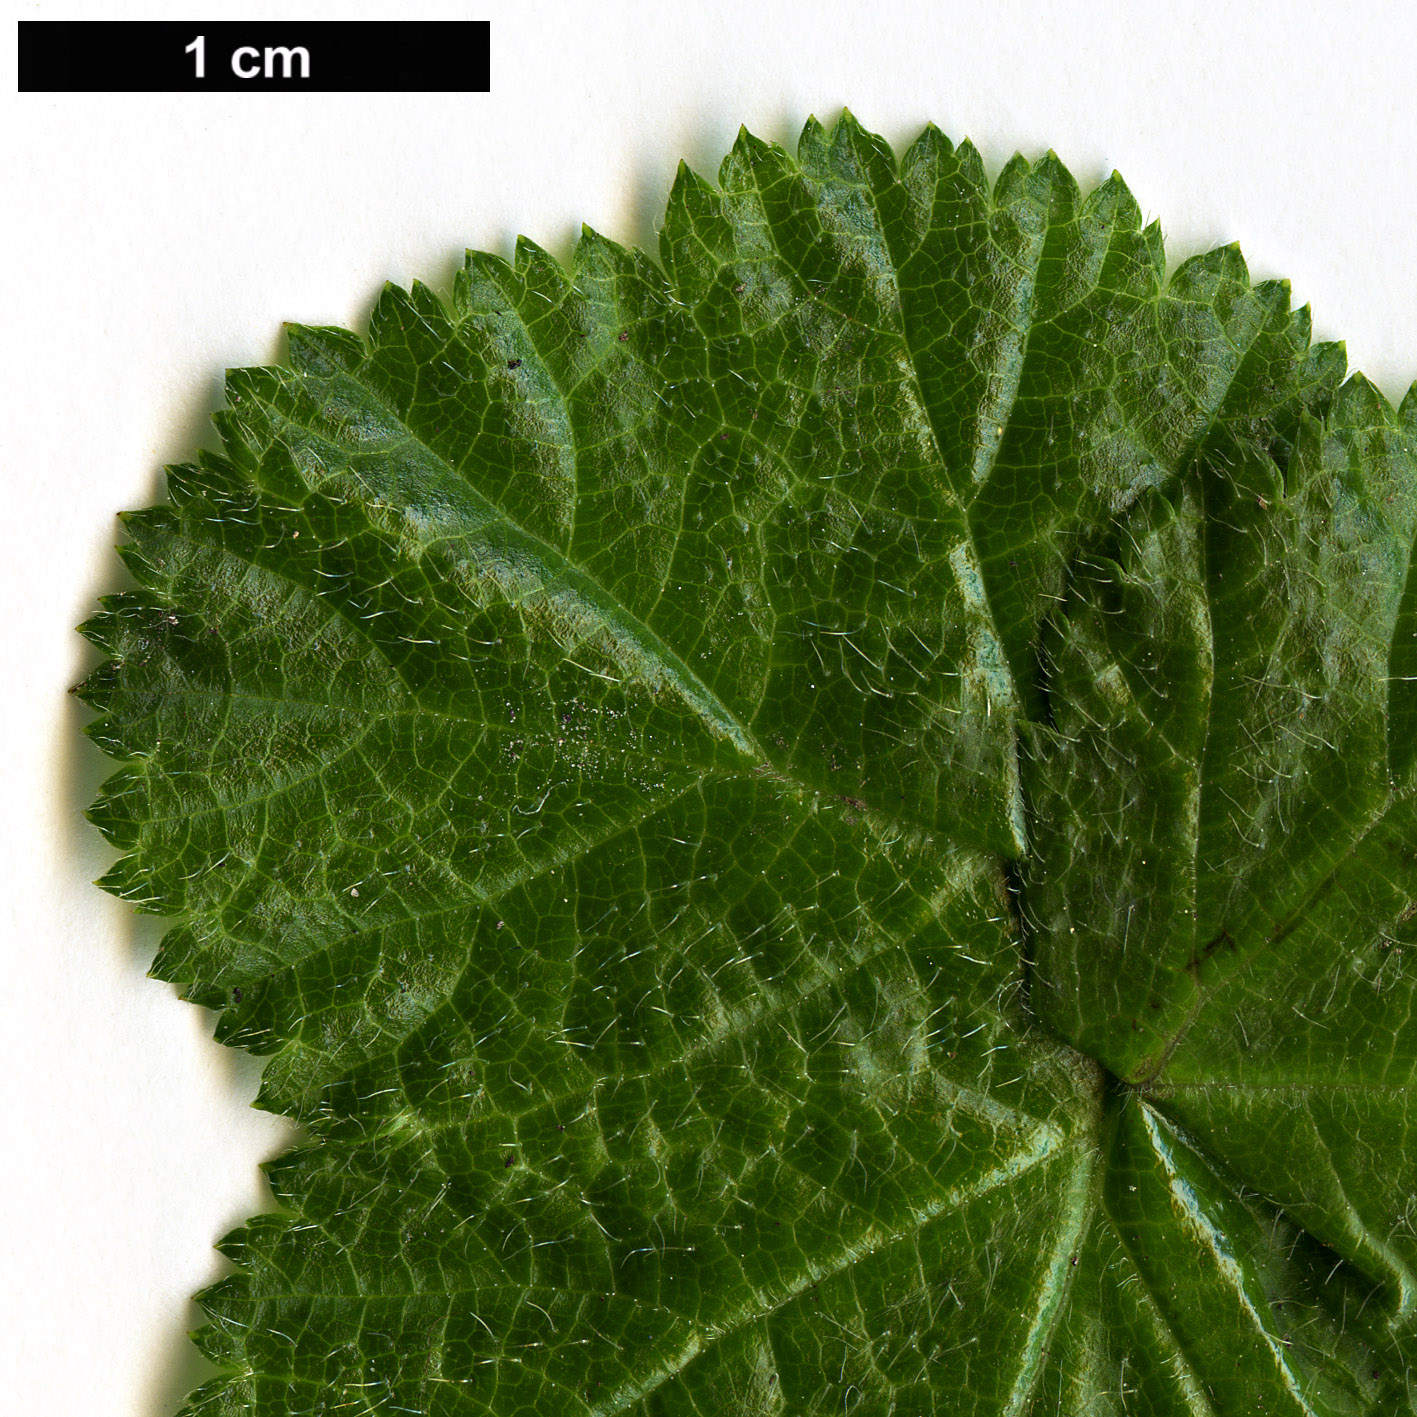 High resolution image: Family: Rosaceae - Genus: Rubus - Taxon: pectinarioides